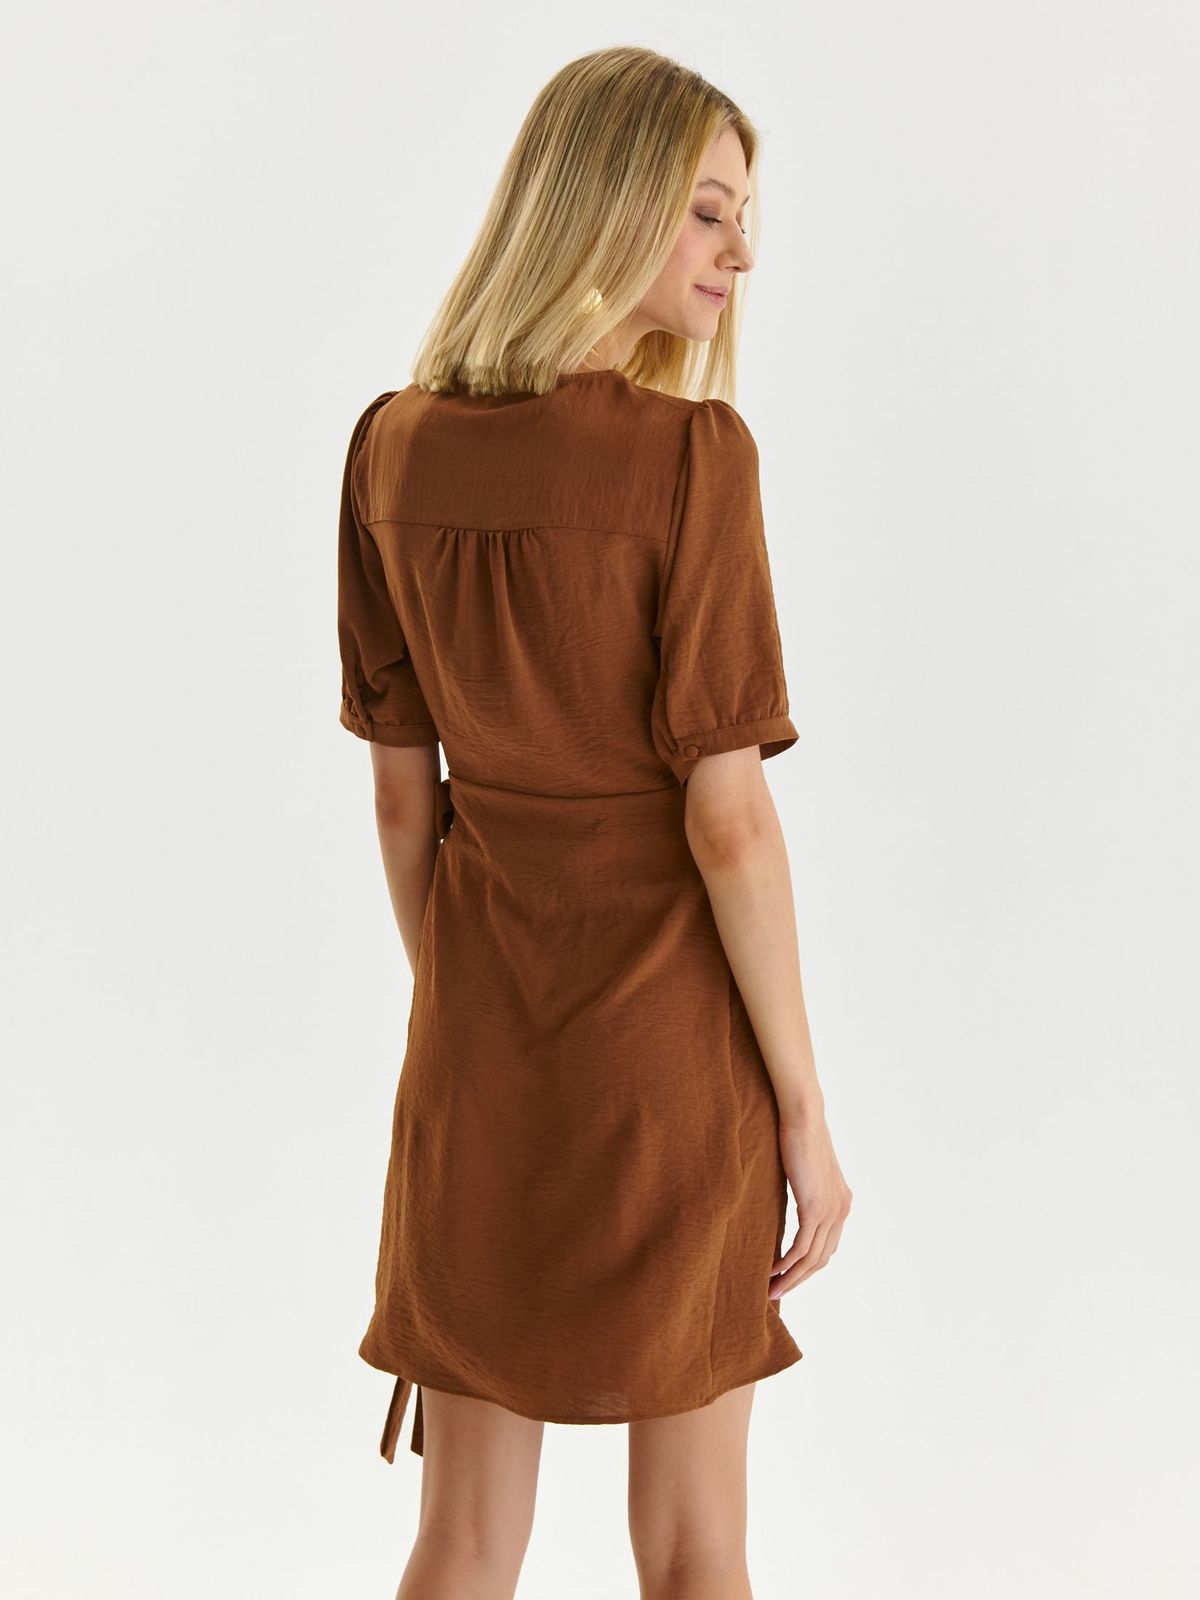 Brown dress thin fabric wrap around 4 - StarShinerS.com